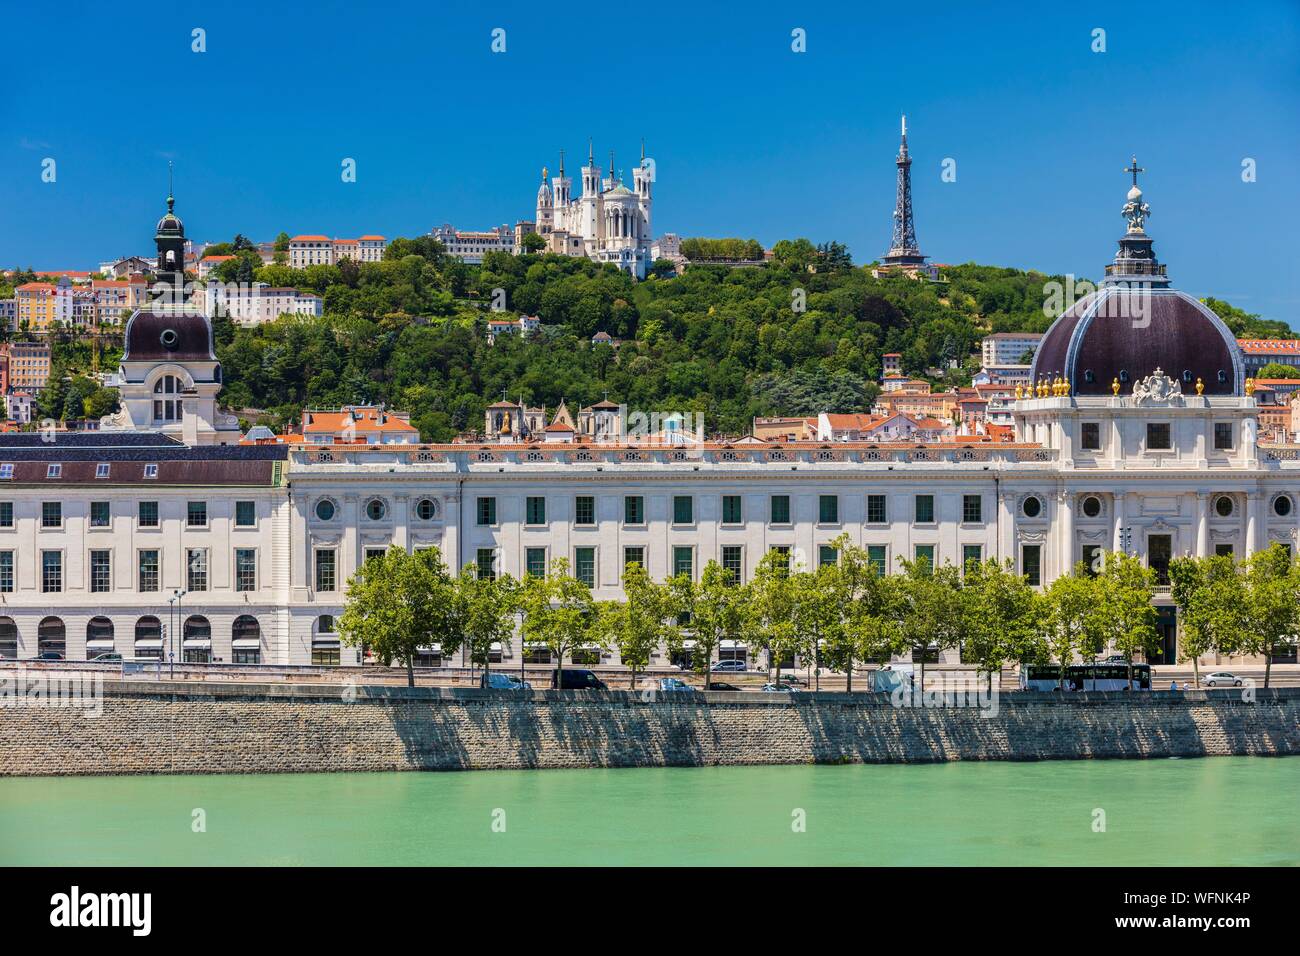 Frankreich, Rhone, Lyon, historische Stätte als Weltkulturerbe von der UNESCO, Rhone Banken mit Blick auf das Hotel Dieu und Notre Dame De Fourviere Basilica Stockfoto